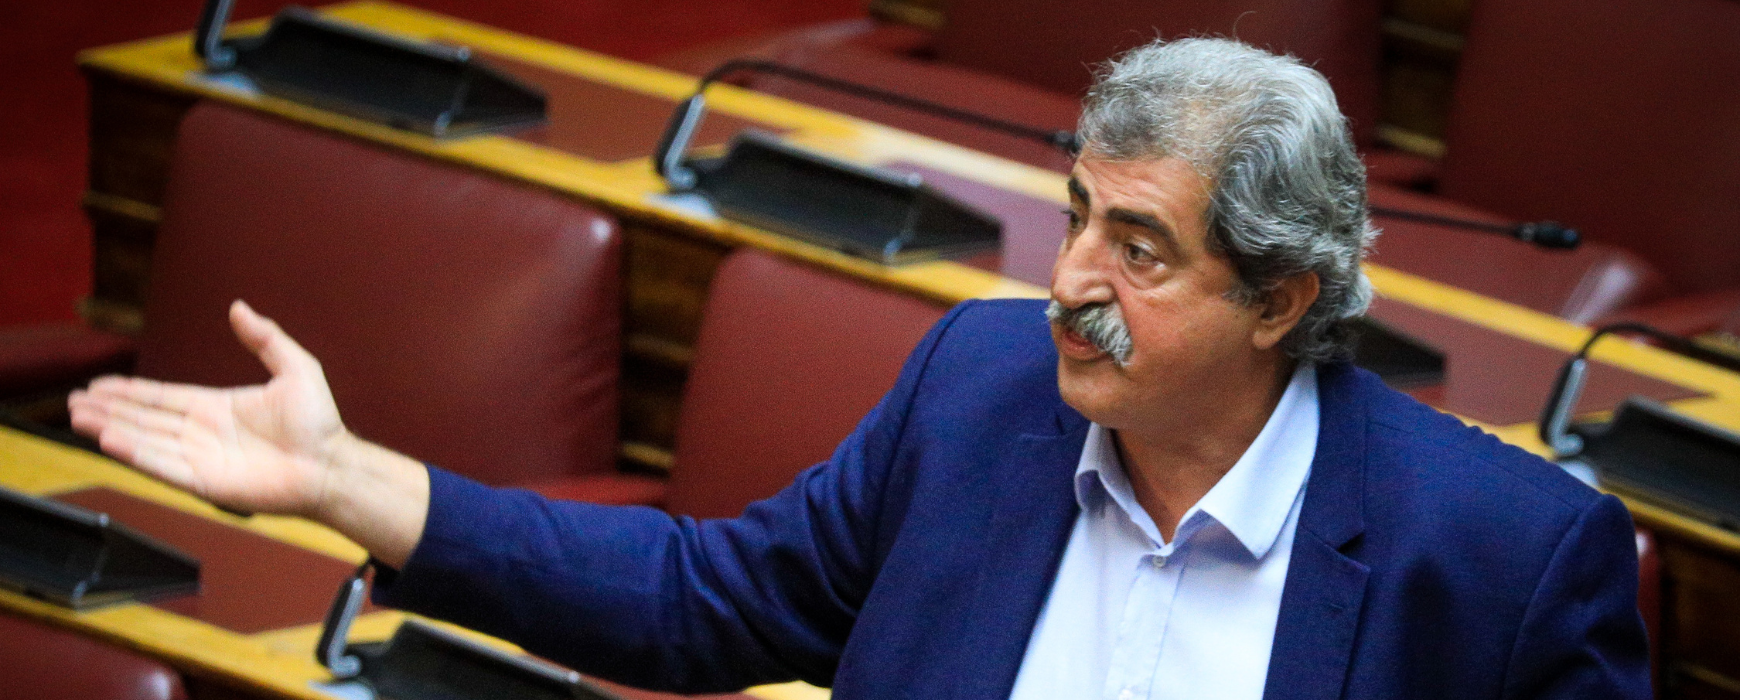 Ρίχνει τους τόνους ο Πολάκης: «Όλα θα λυθούν στα όργανα του κόμματος – Ο Μητσοτάκης πρέπει να φύγει με κρότο»